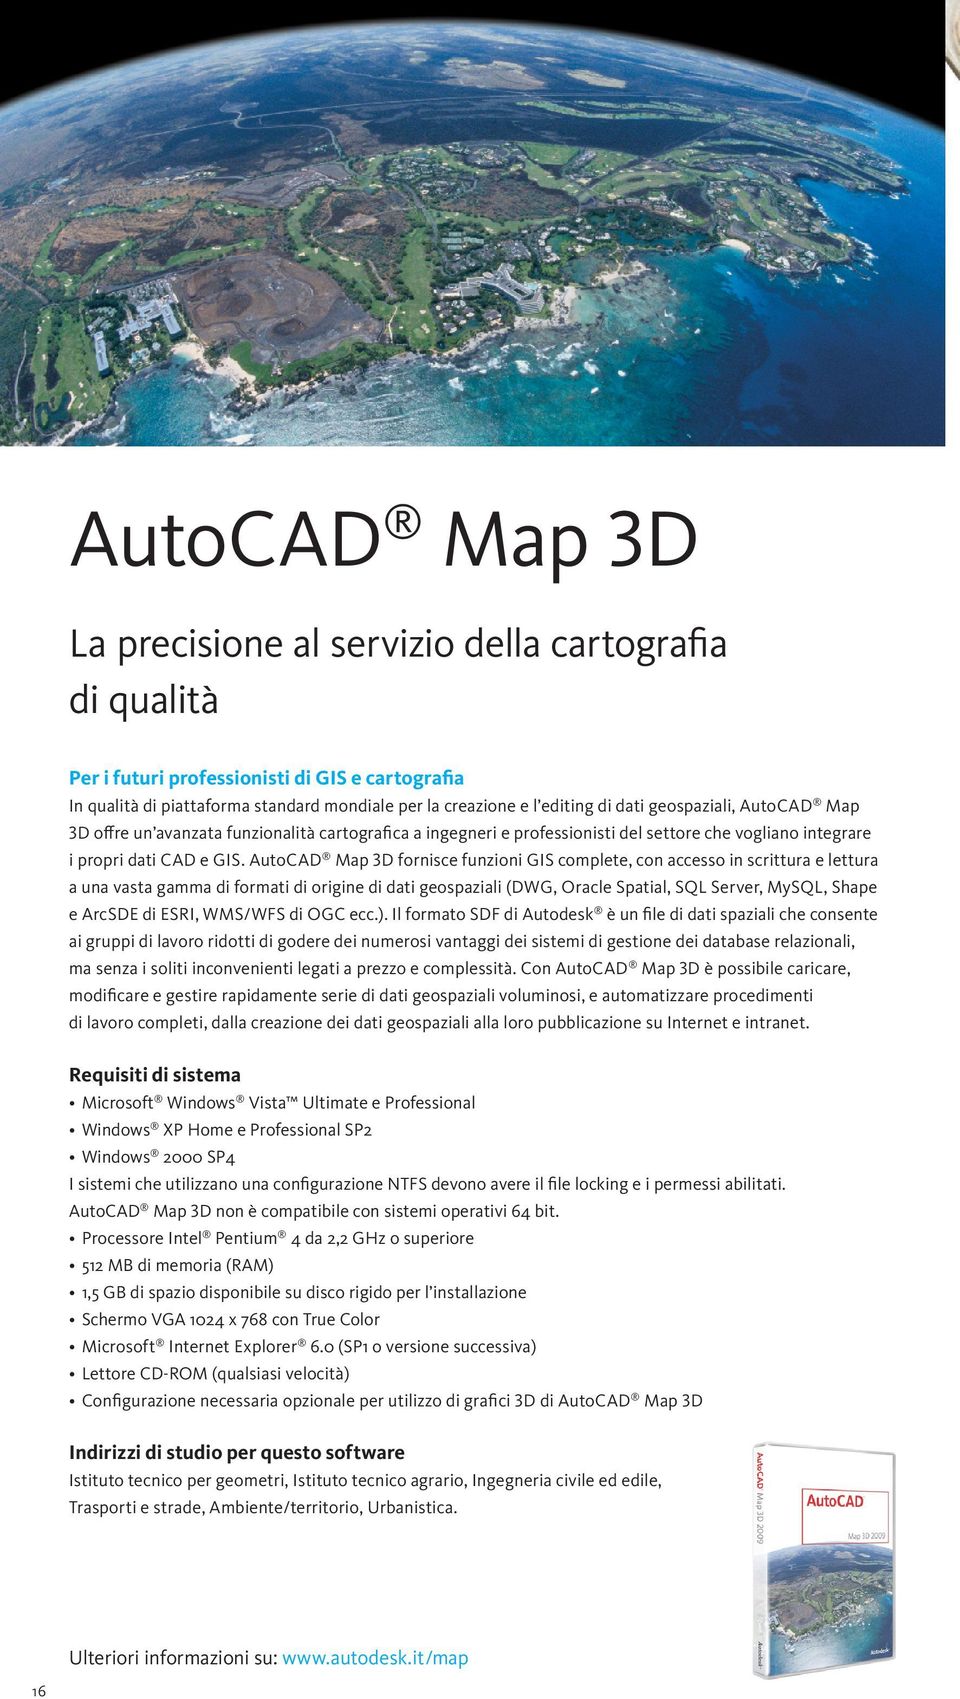 AutoCAD Map 3d fornisce funzioni GIS complete, con accesso in scrittura e lettura a una vasta gamma di formati di origine di dati geospaziali (DWG, Oracle Spatial, SQL Server, MySQL, Shape e ArcSDE